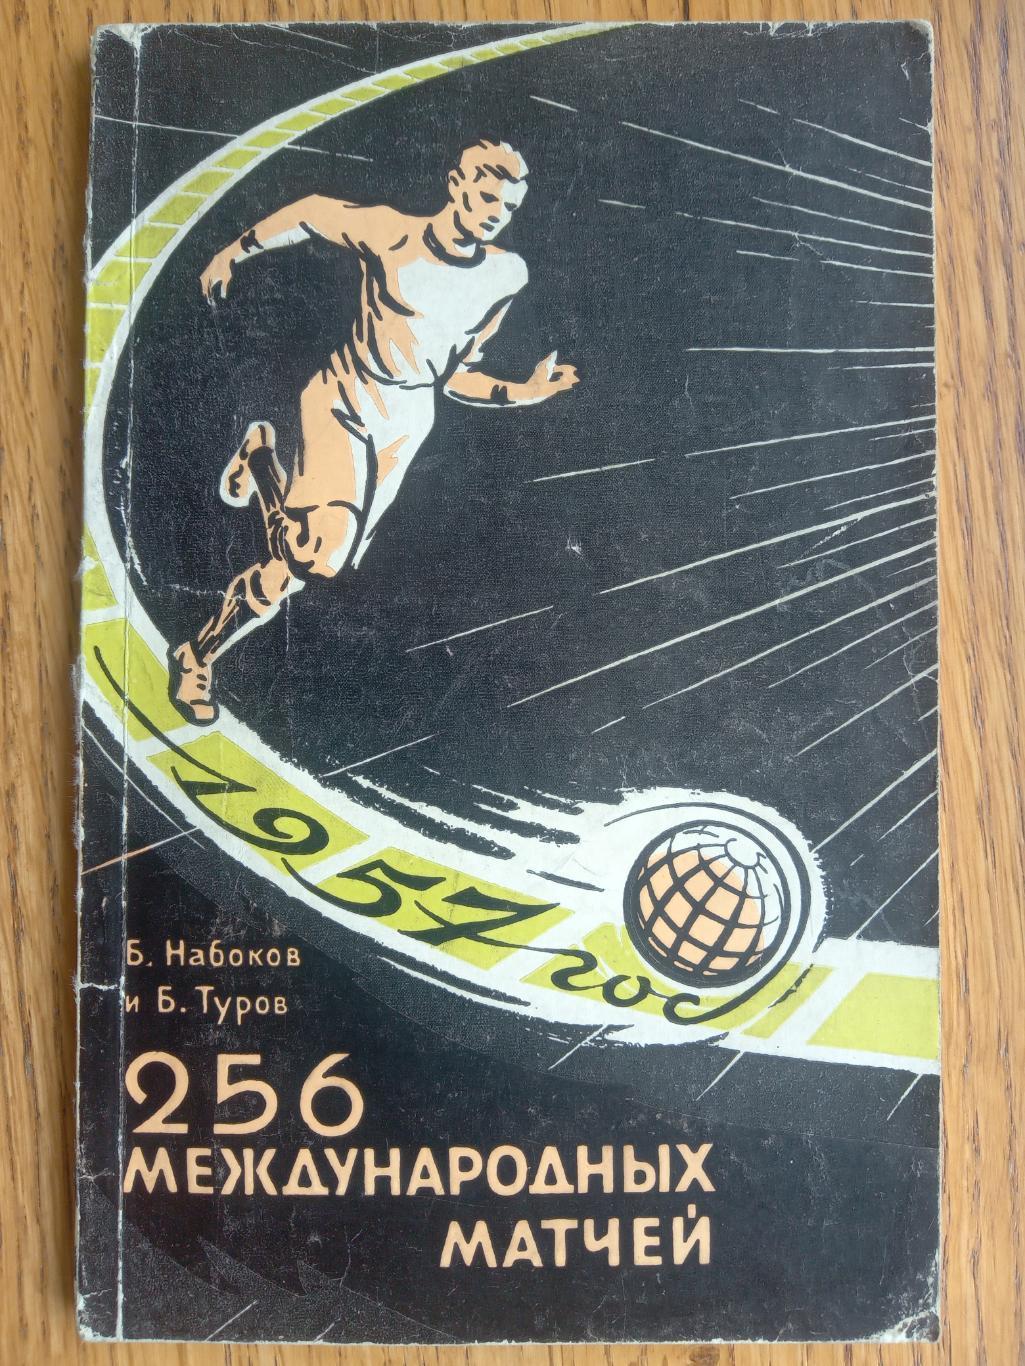 книга- довідник. набоков. 25 міжнародних матчів 1957 року.).м.